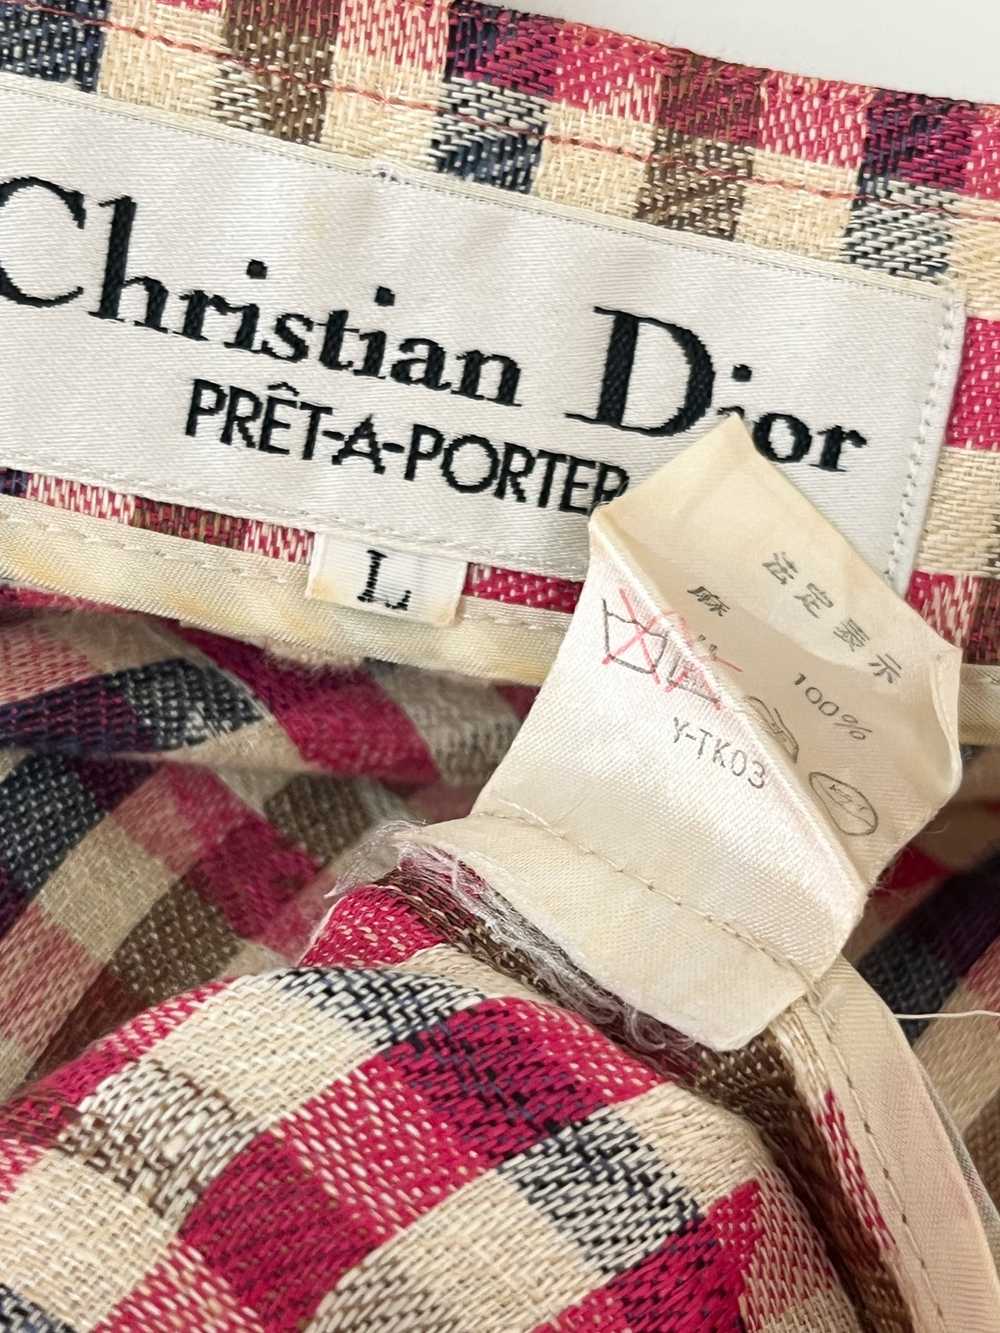 Dior Christian Dior PRET-A-PORTER - image 6